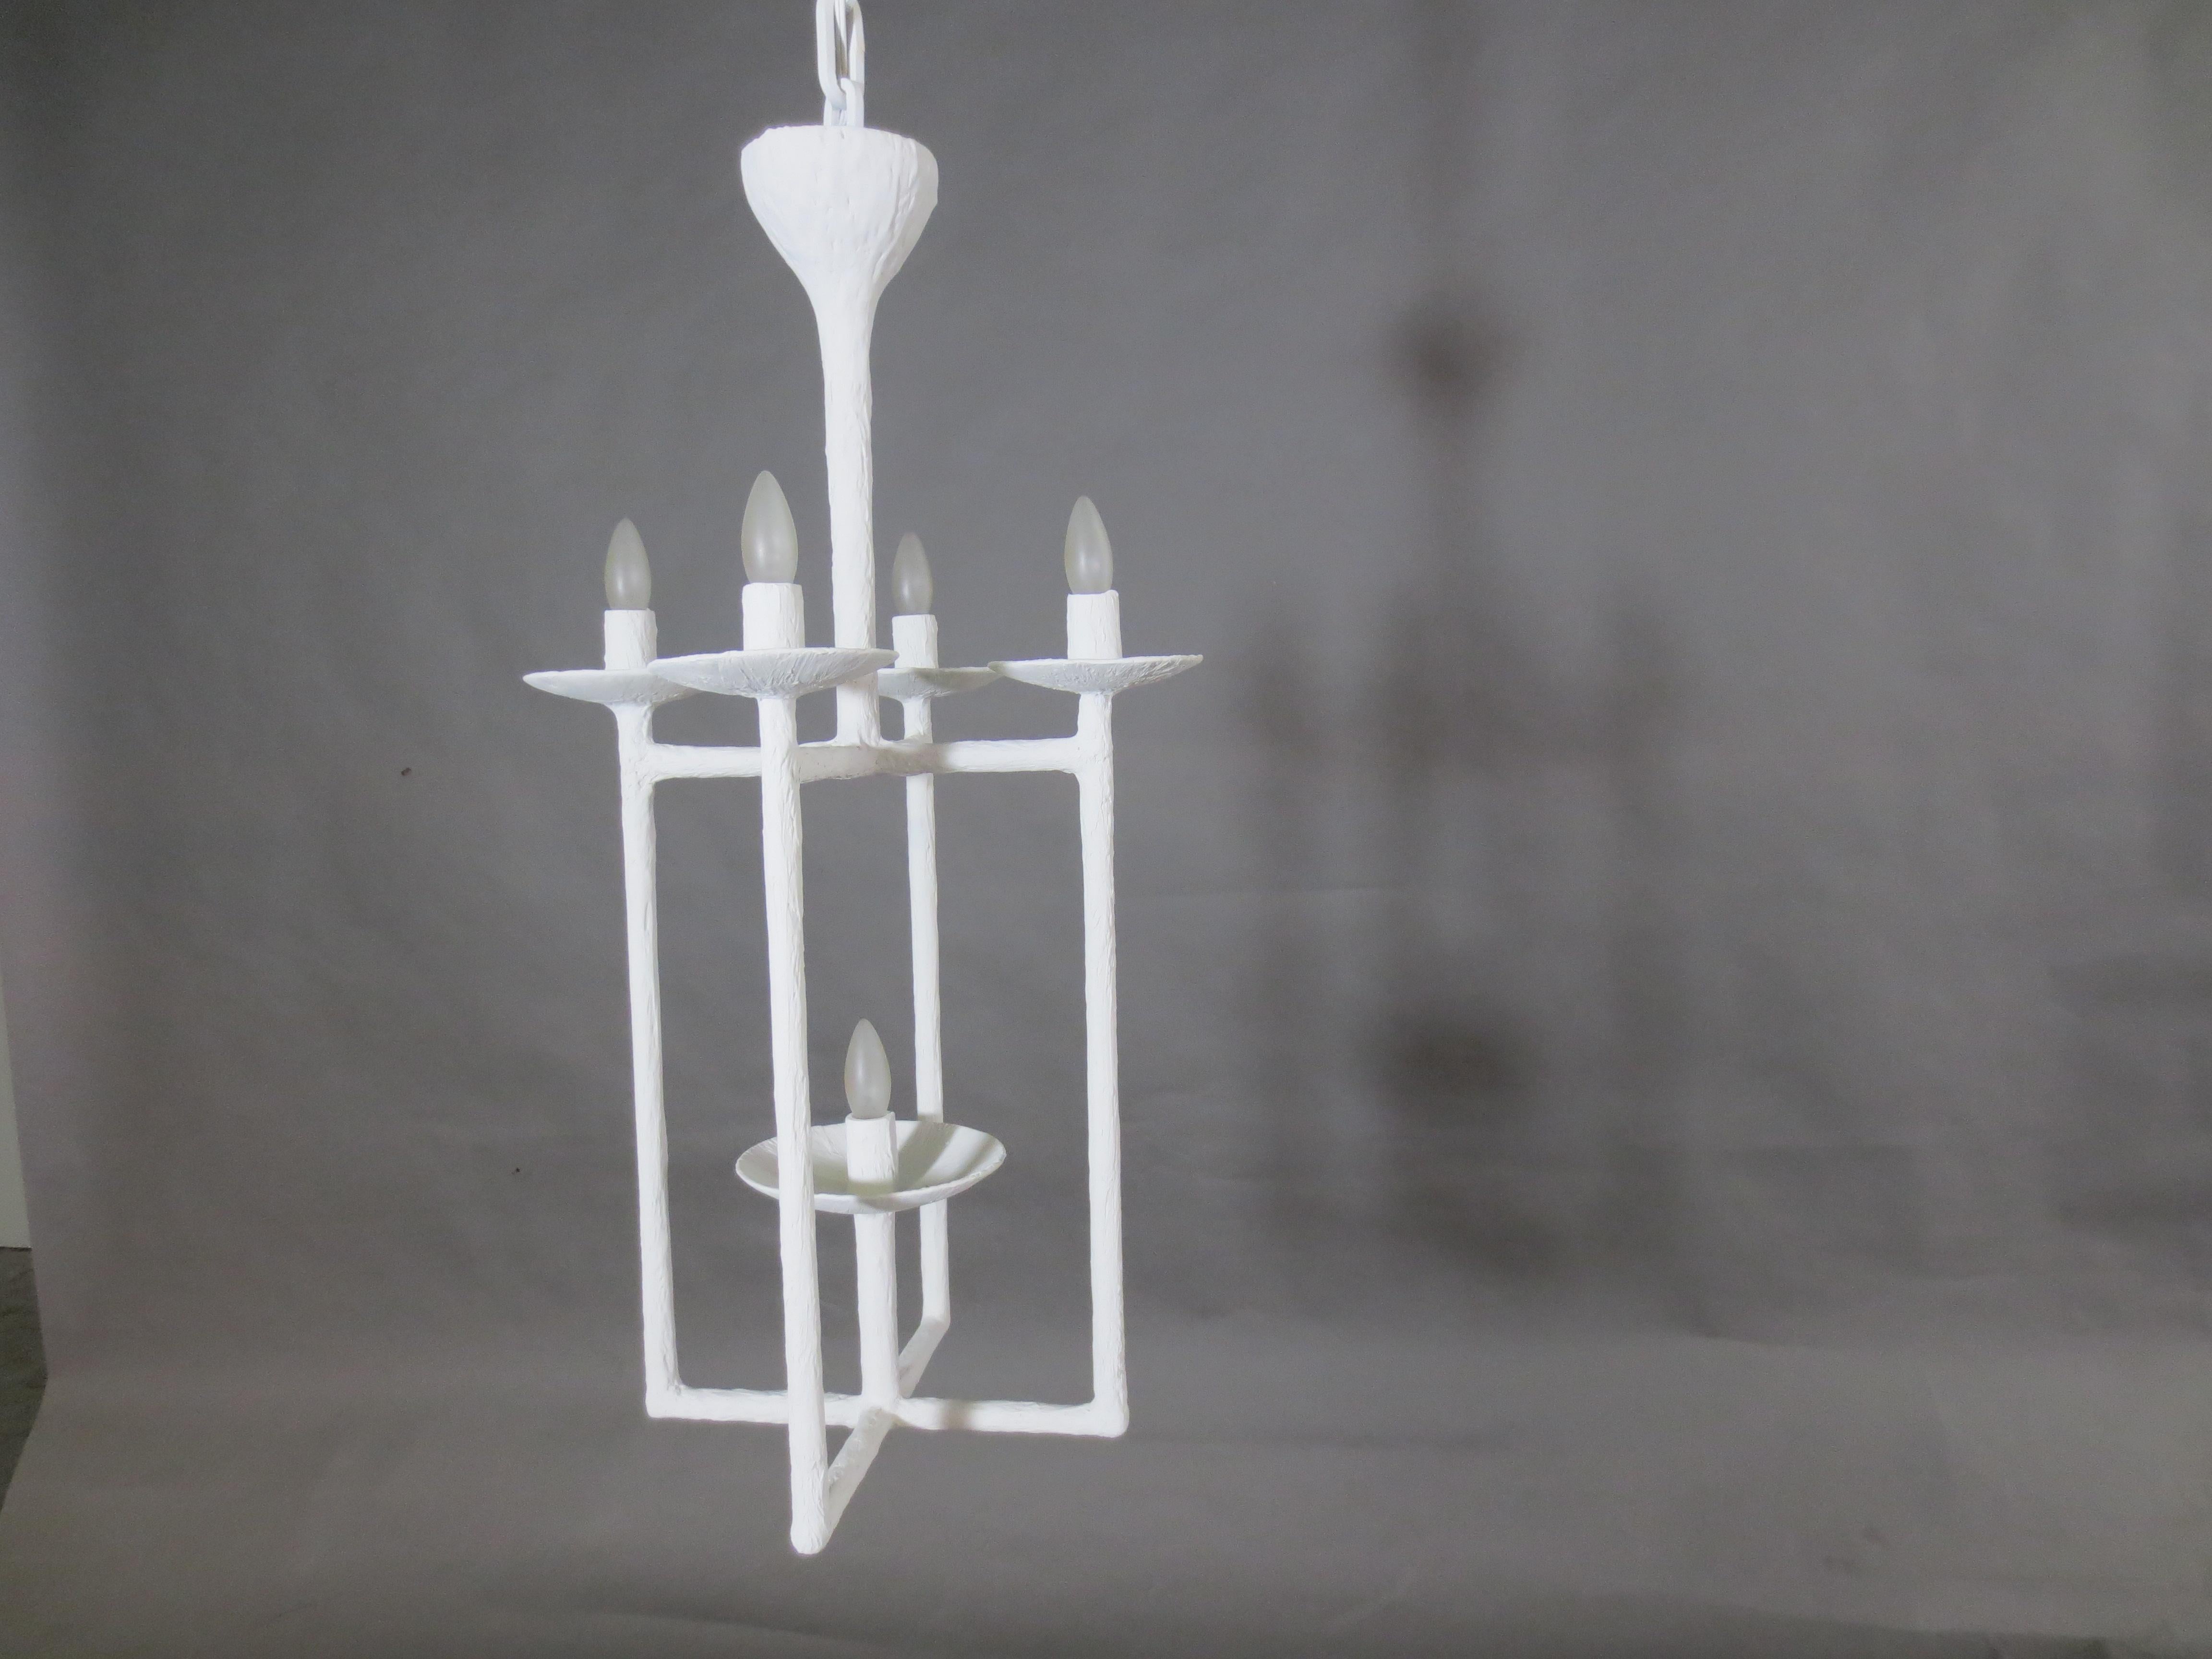 Plaster Lantern White Finish Chandelier by Apsara Interior (amerikanisch)